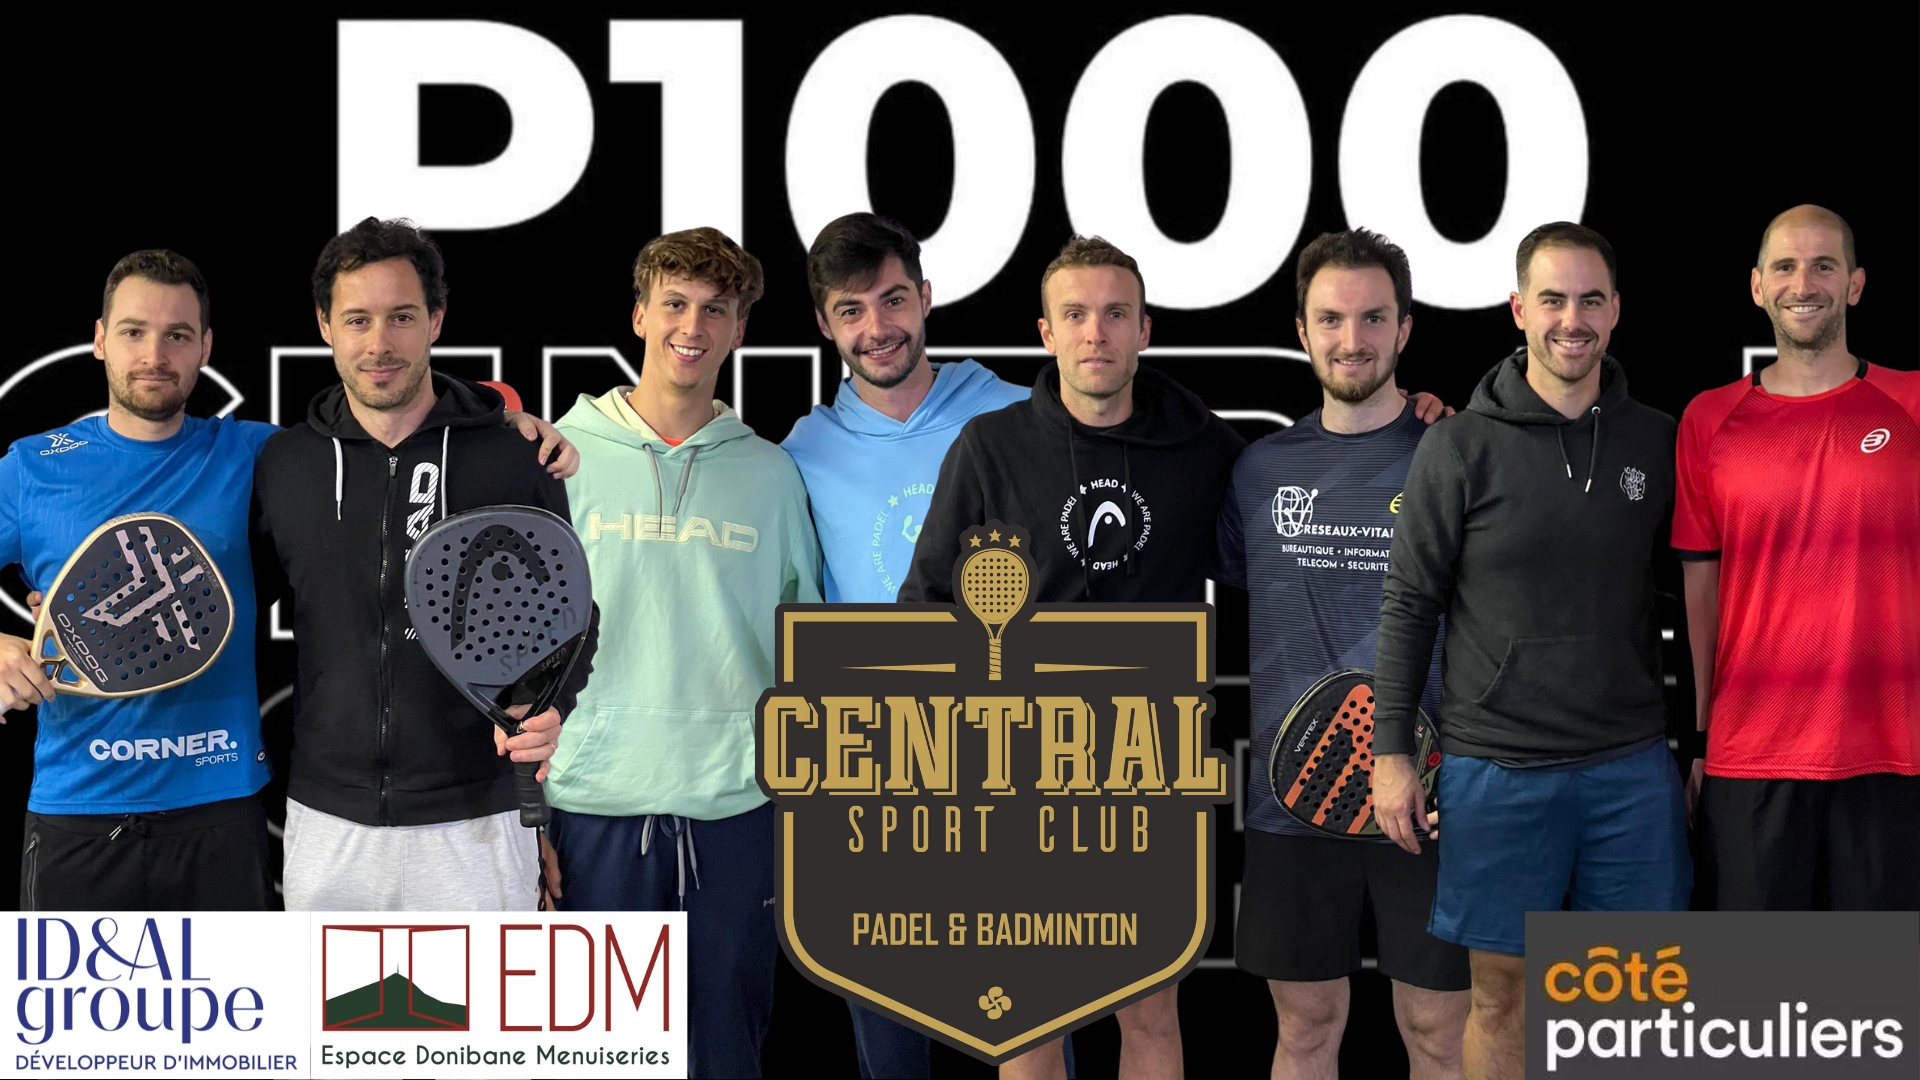 Open Central Sport Club – Les 4 premières têtes de série en 1/2